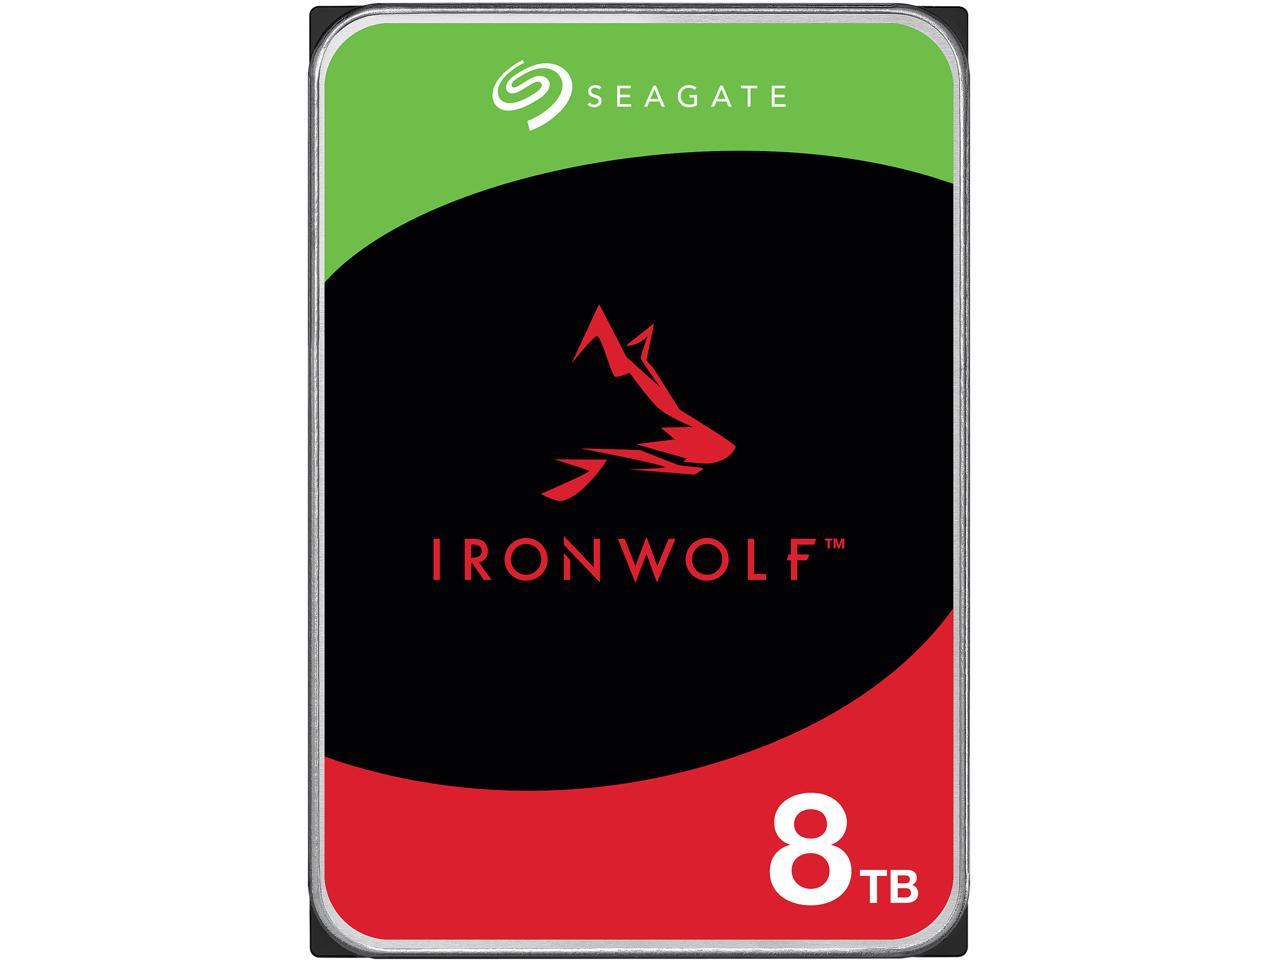 8TB Seagate IronWolf 3.5"  NAS  Hard Drive $130